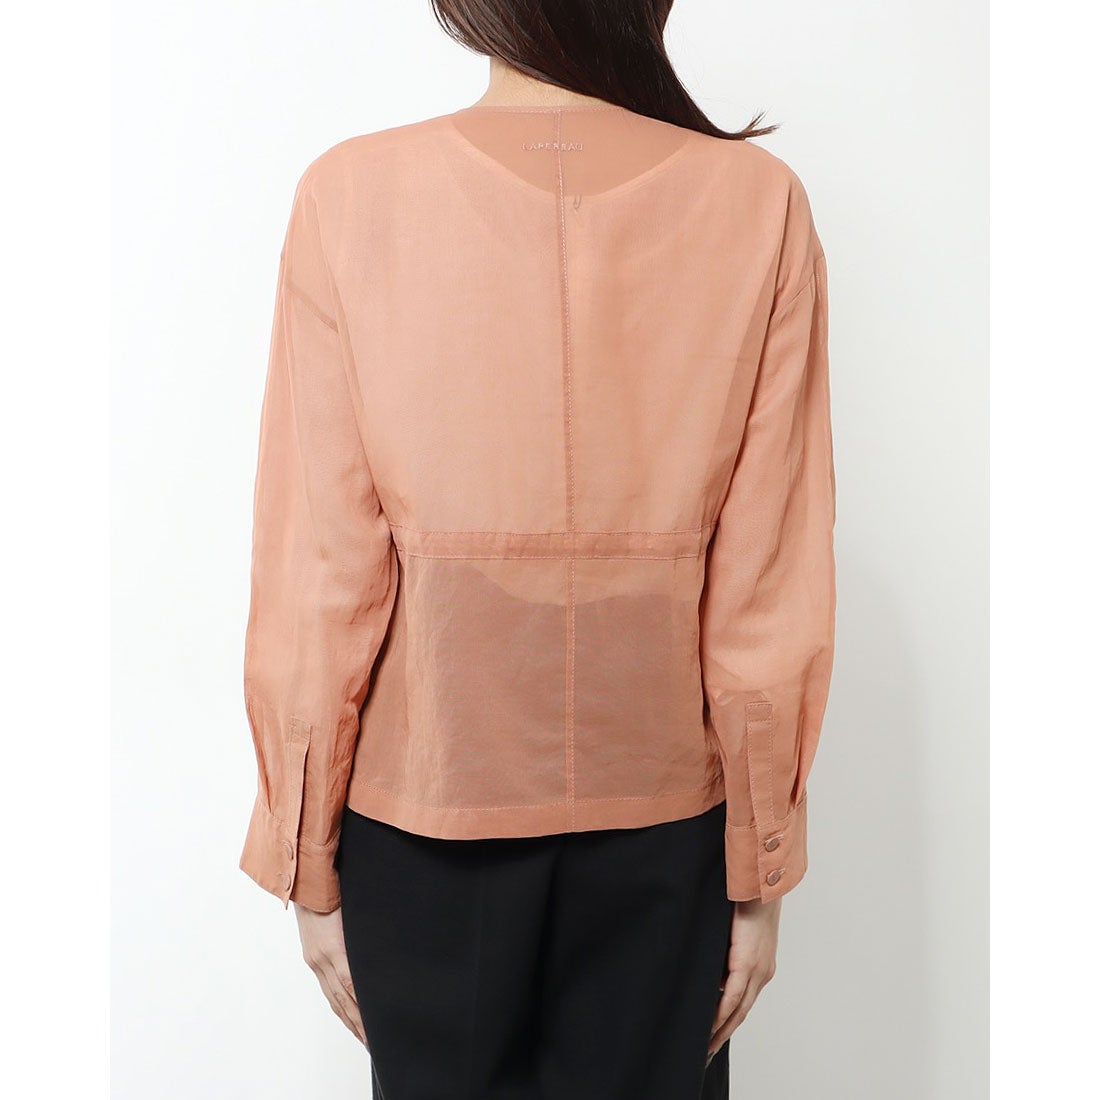 ヨシエイナバ yoshie inaba コットンオーガンジージャケット （ピンク系） -waja bazar - 海外ファッションブランド通販